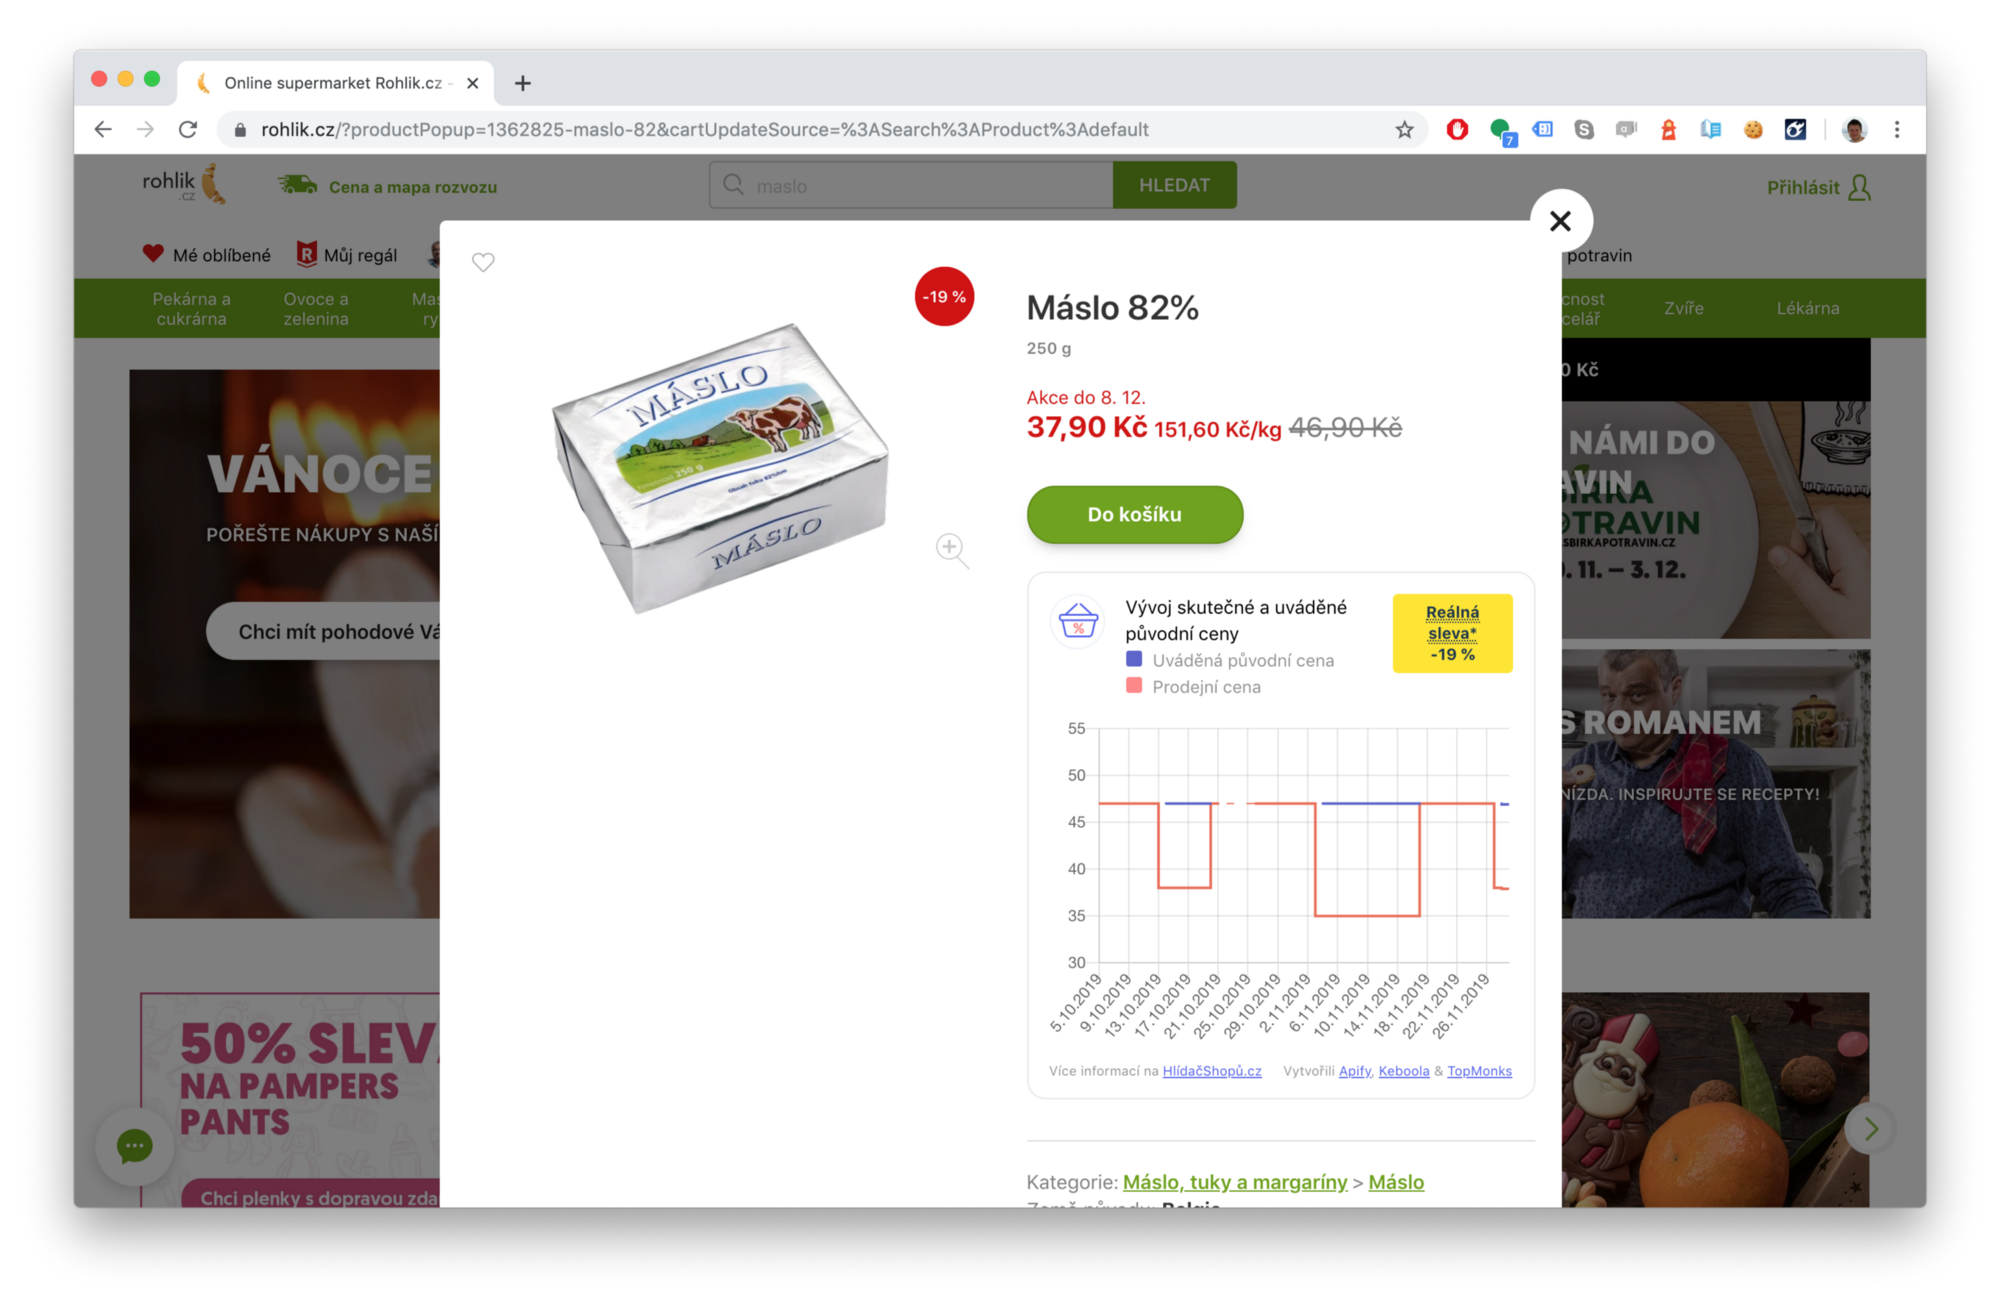 snímek obrazovky masla ve výprodeji na webu rohlik.cz z 46,90 Kč na 37,90 Kč